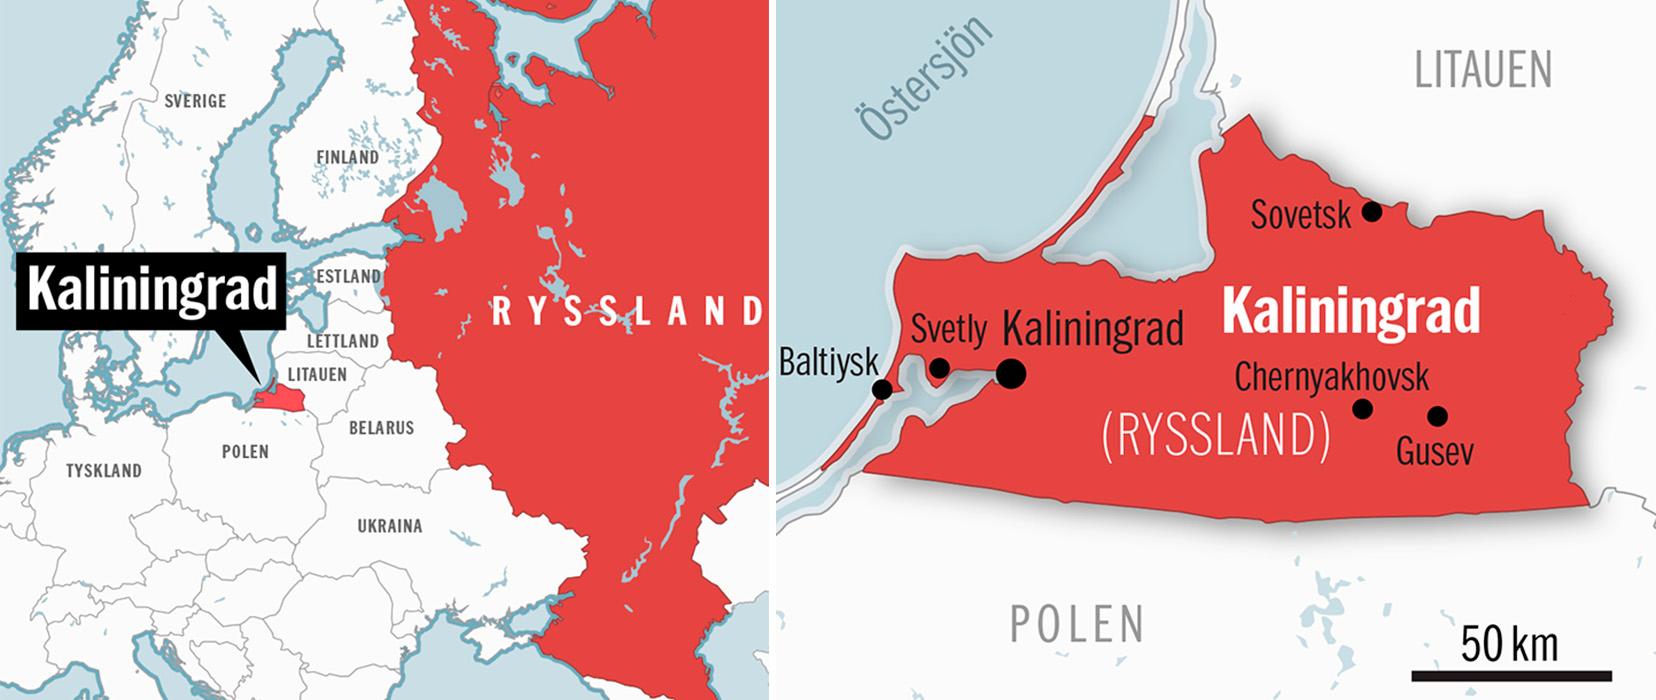 Kaliningrad-området var helt stängt för utlänningar under Sovjettiden.